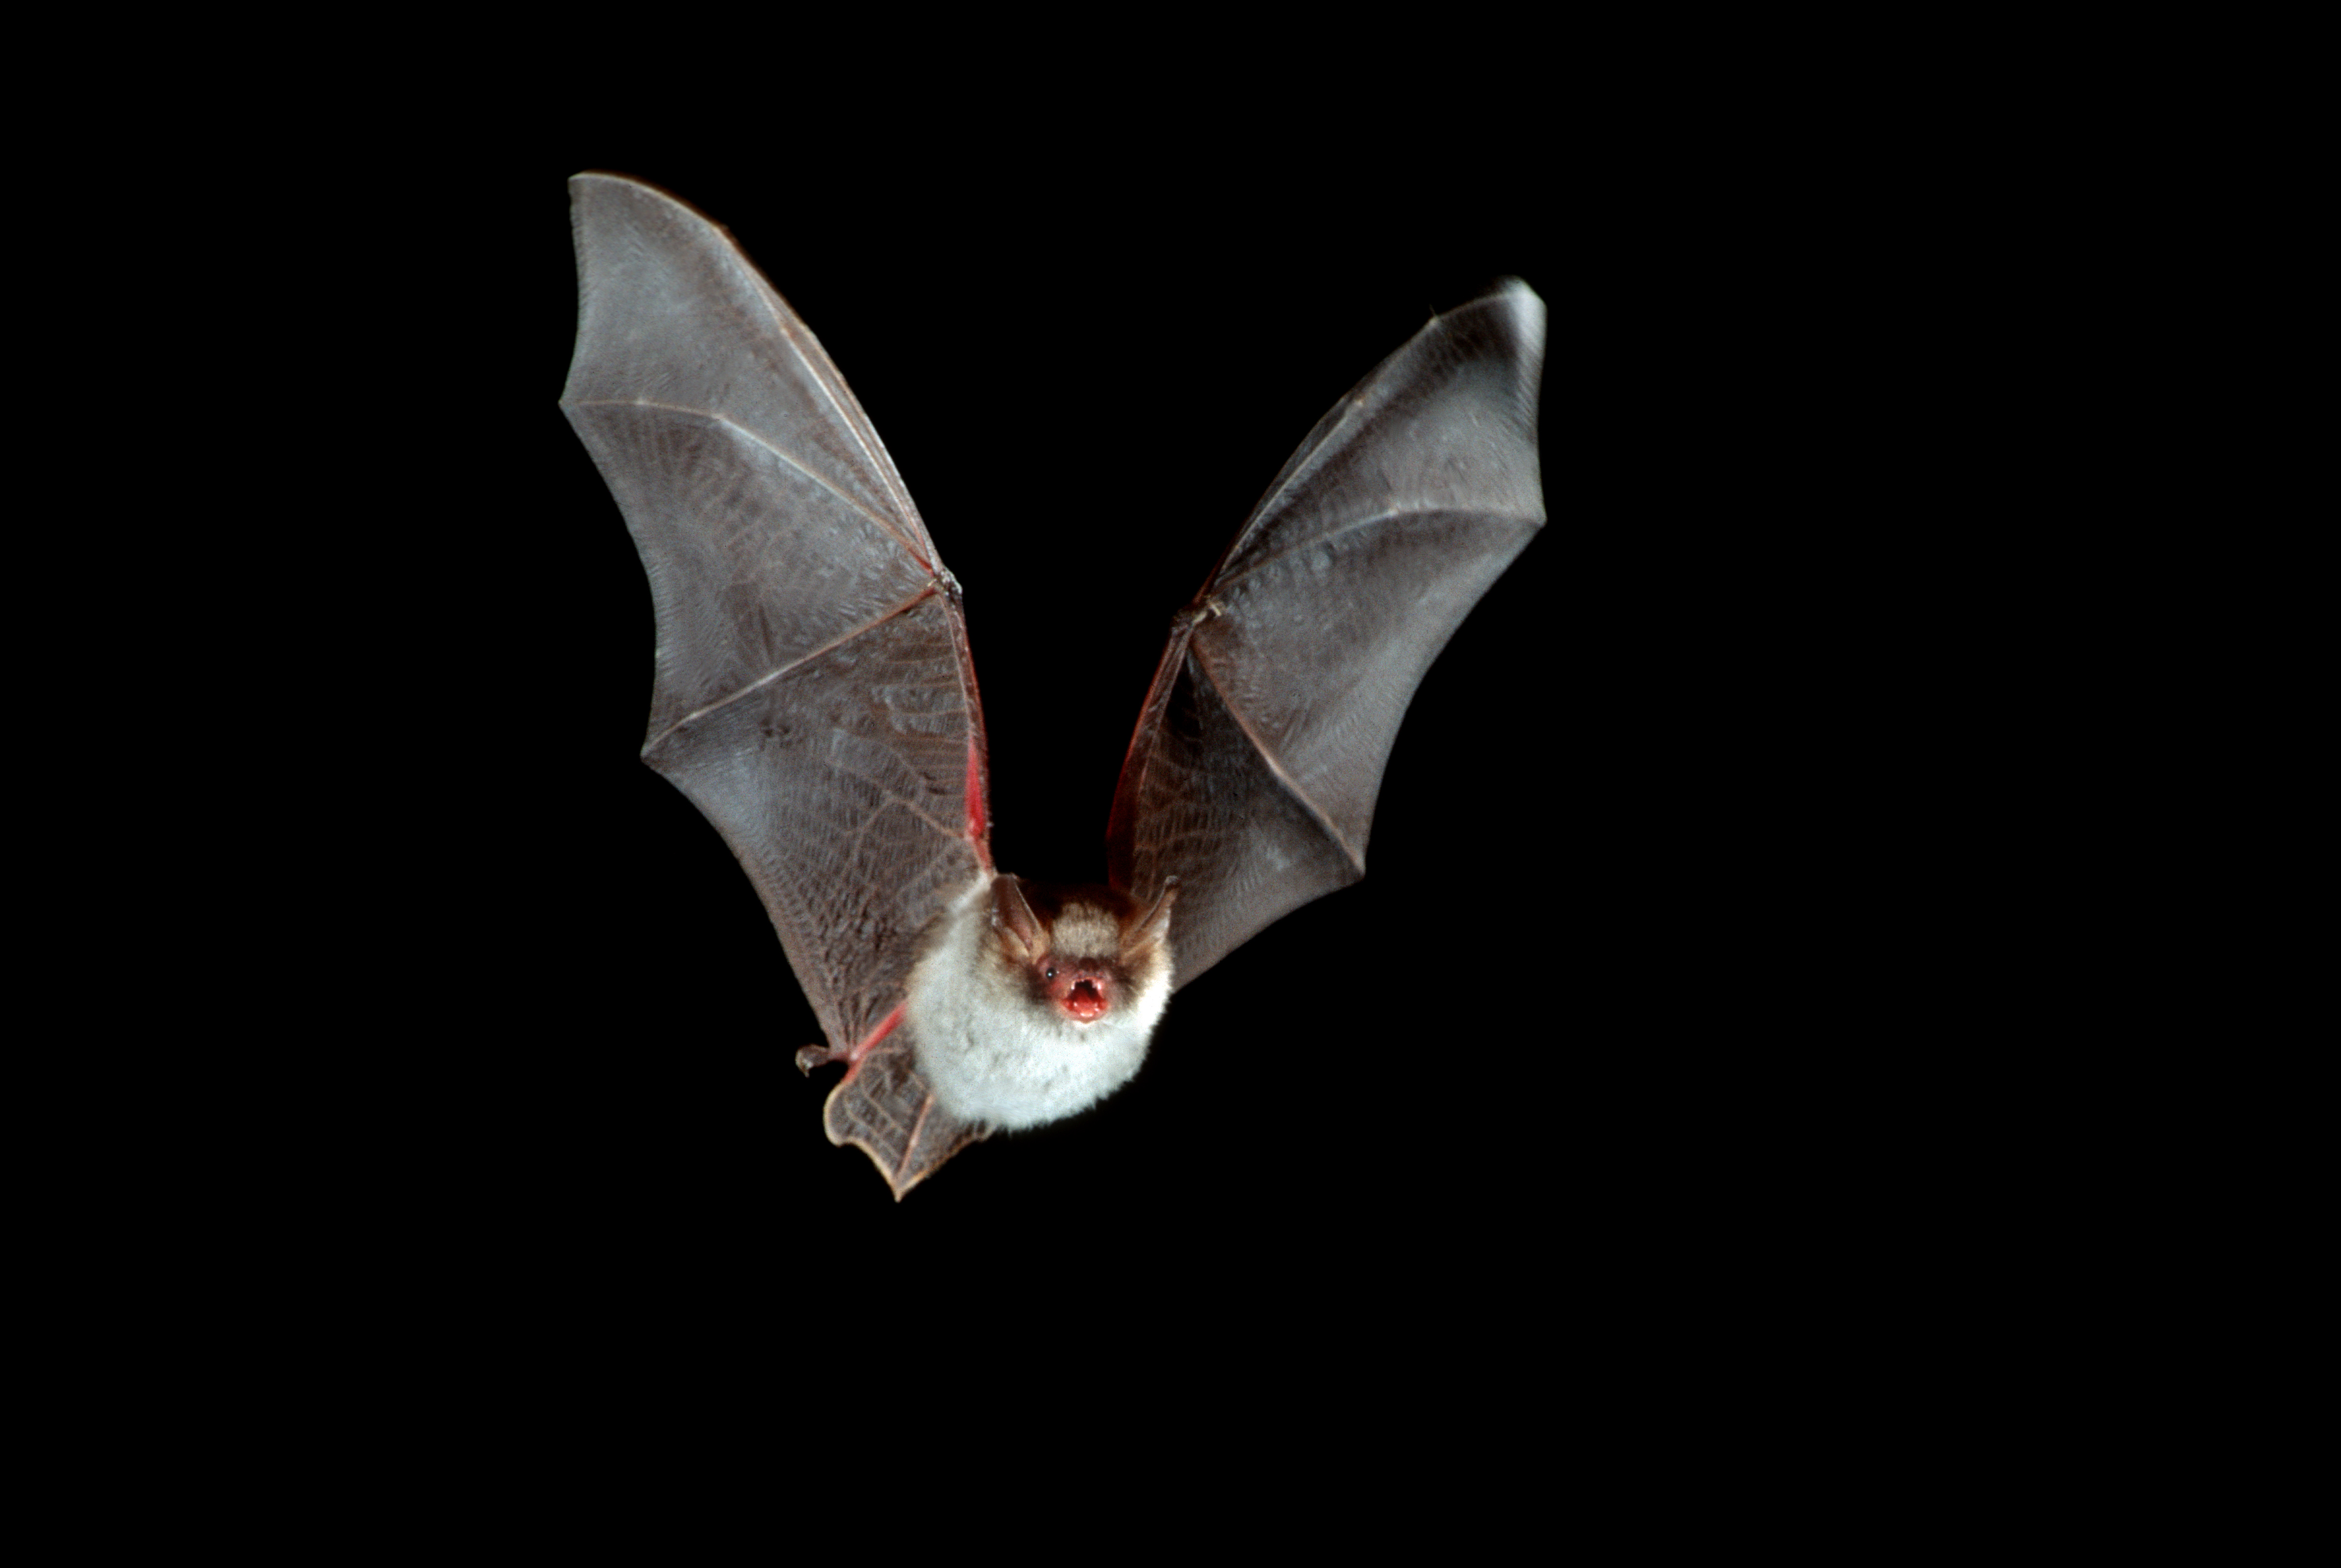 Natterer’s bat in flight